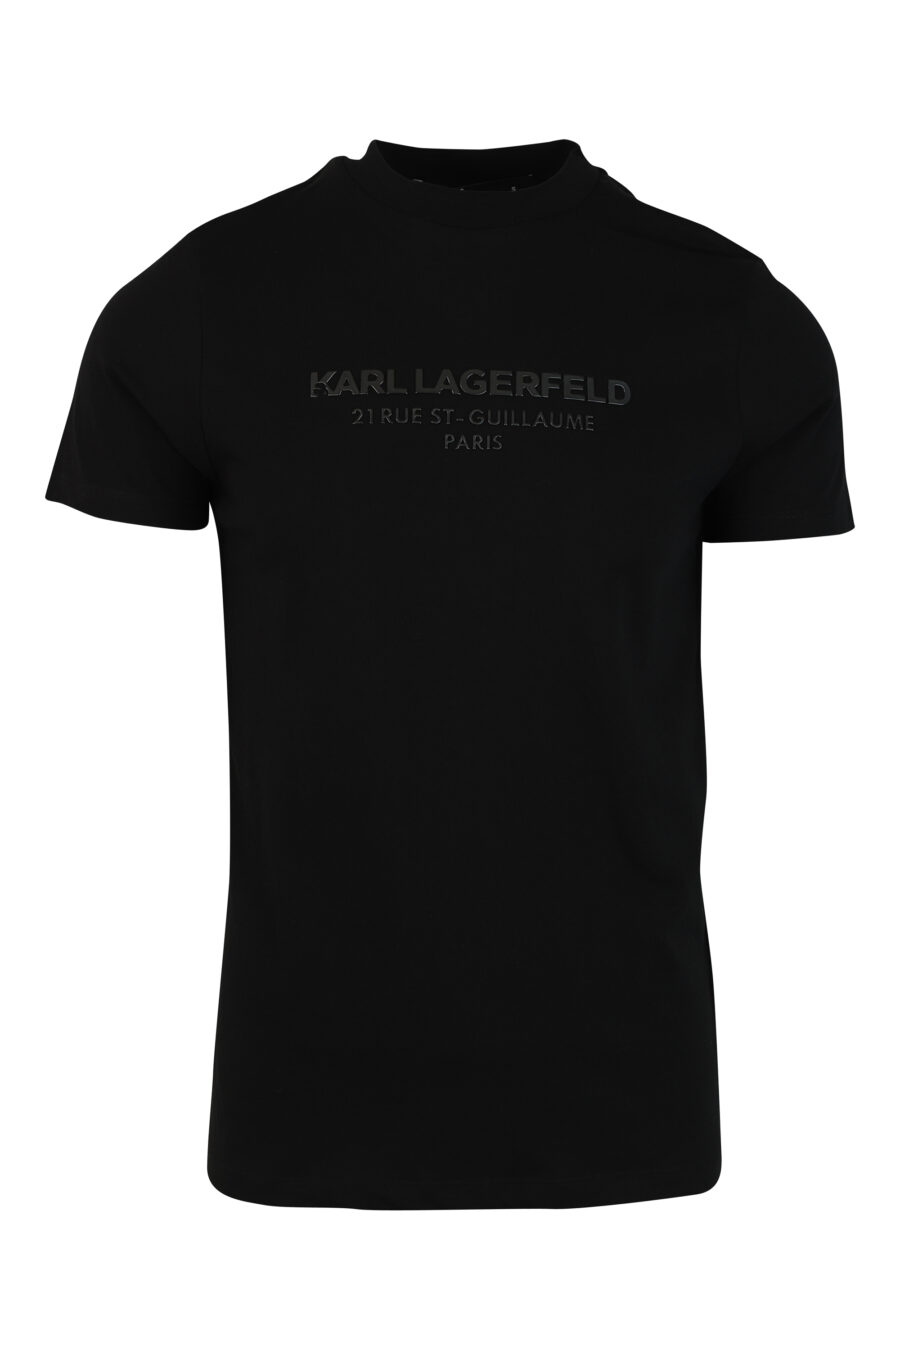 T-shirt preta com logótipo monocromático "rue st guillaume" - 4062226289306